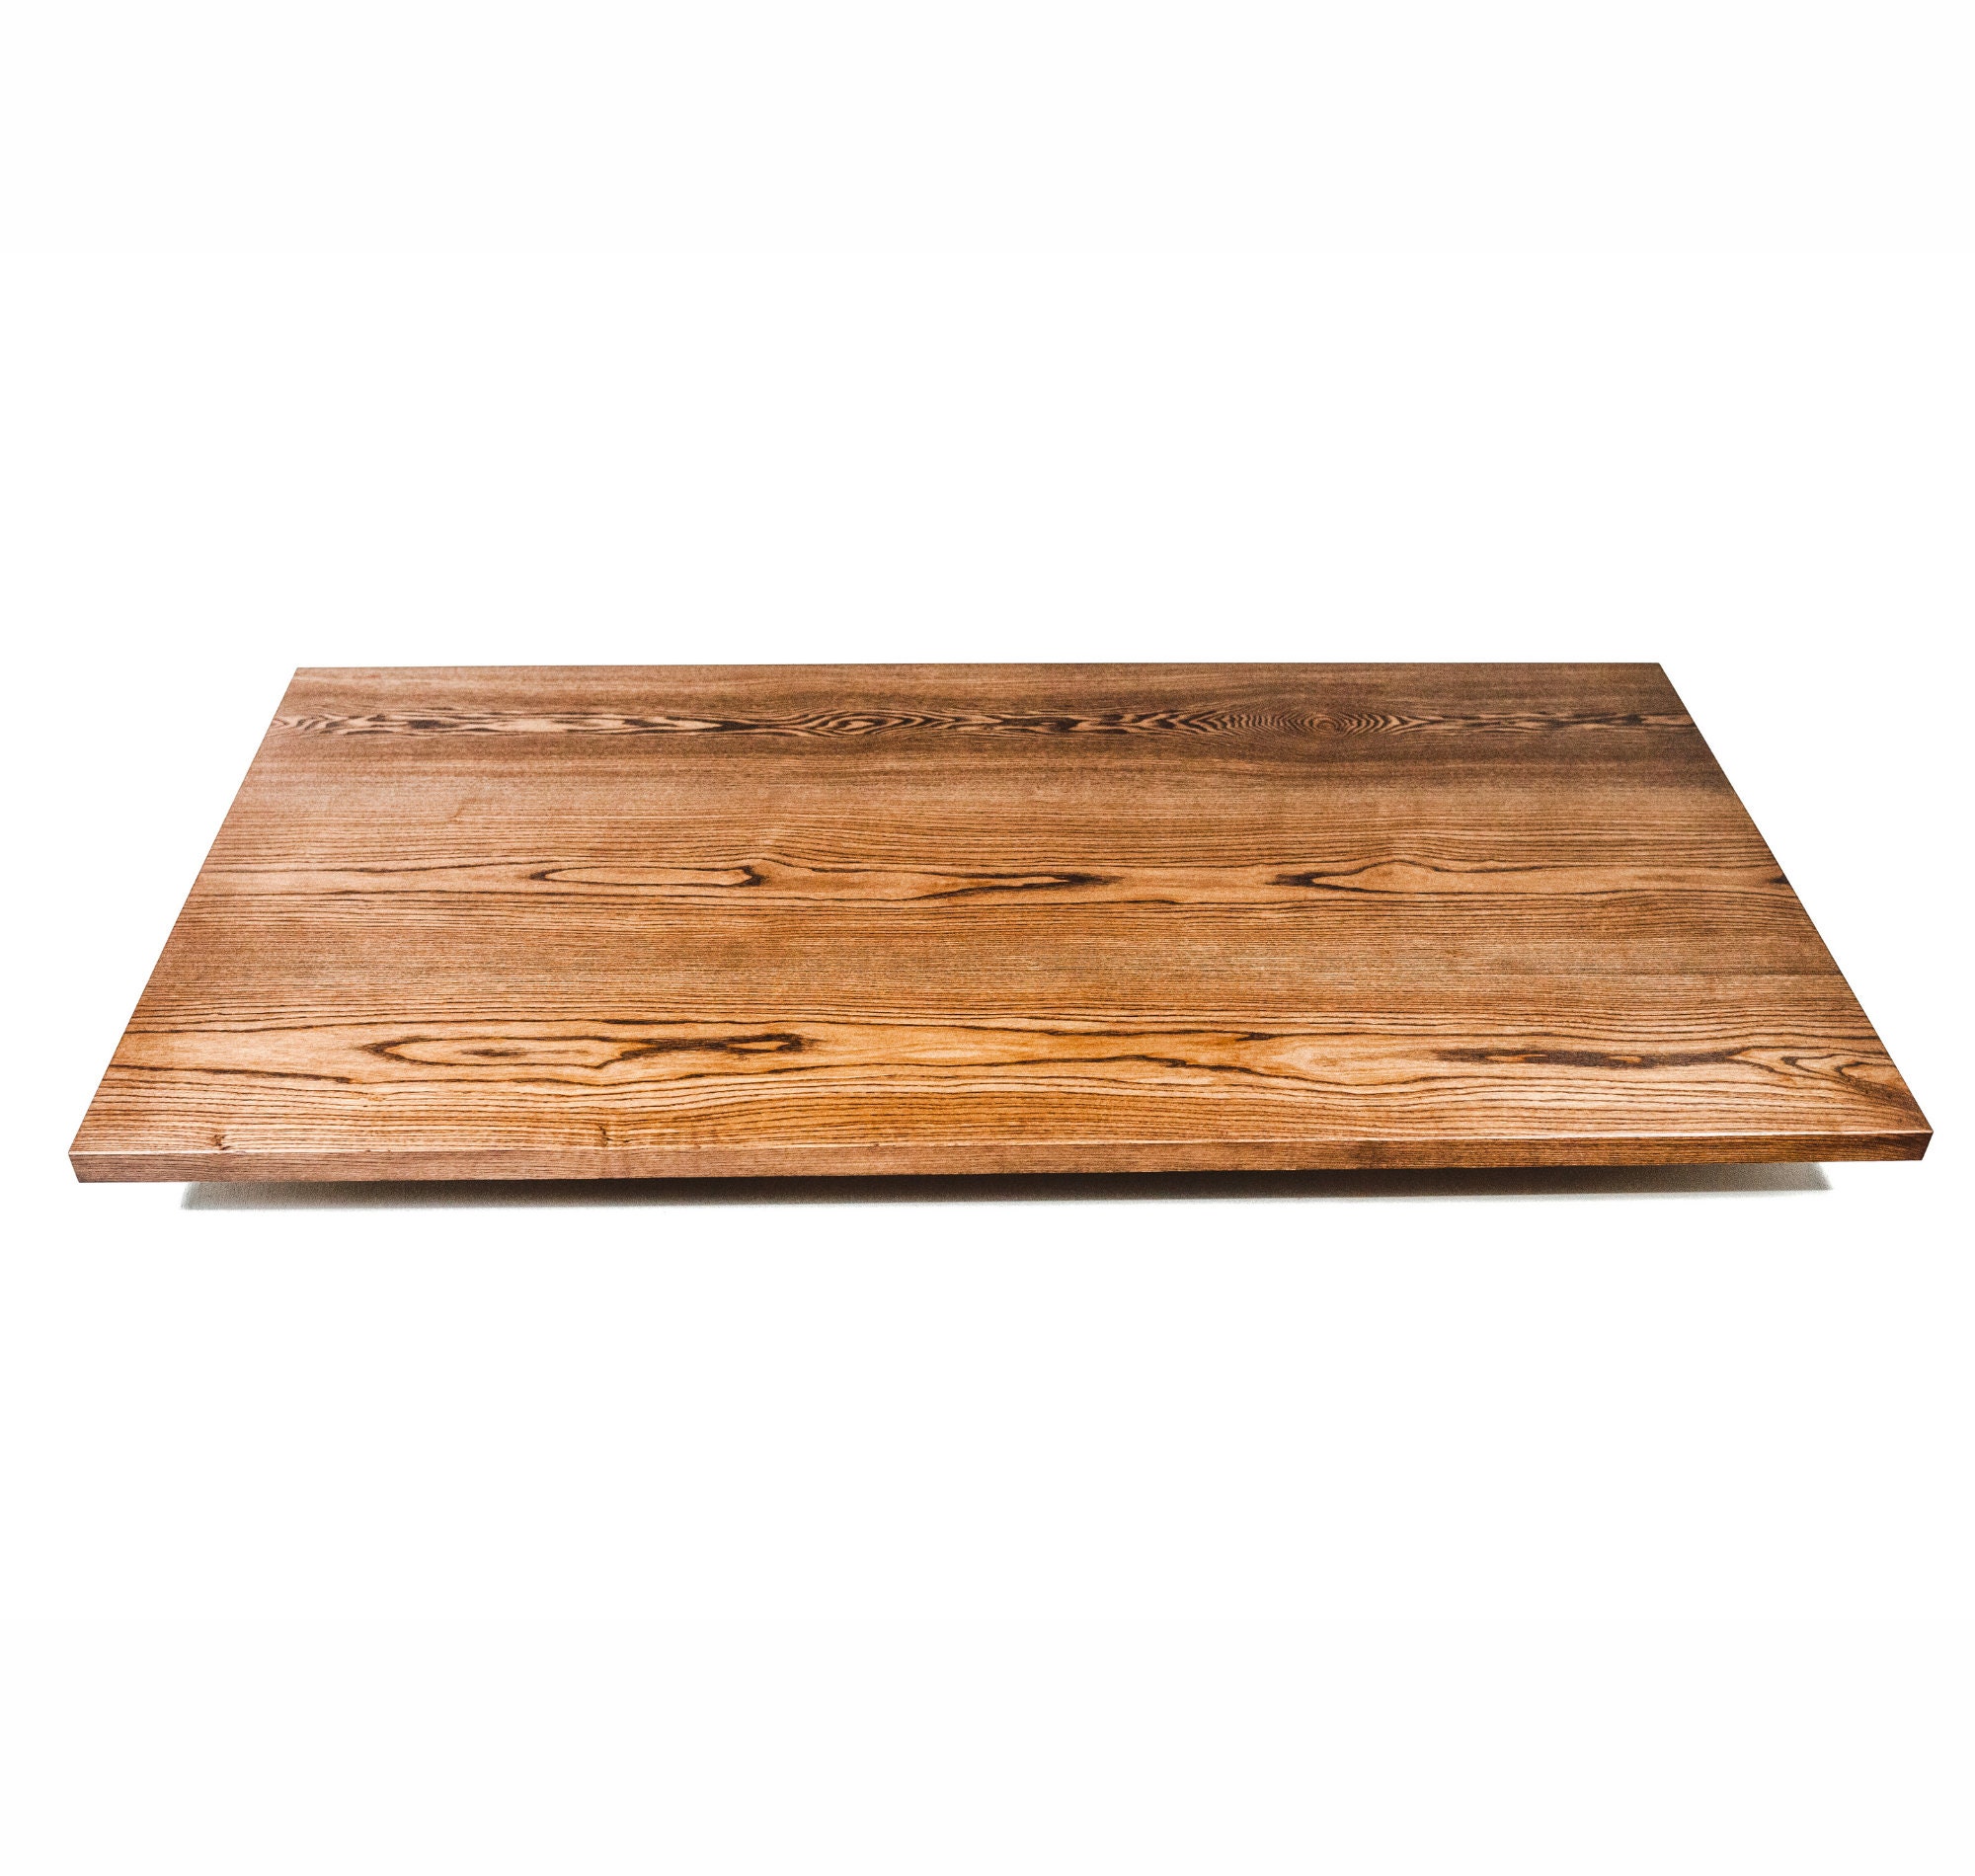 Tablero de madera de roble / Tablero de escritorio de madera / Madera  maciza natural exclusiva / Hecho a mano / Rústico / Disponible en 10  colores diferentes, varios tamaños -  España